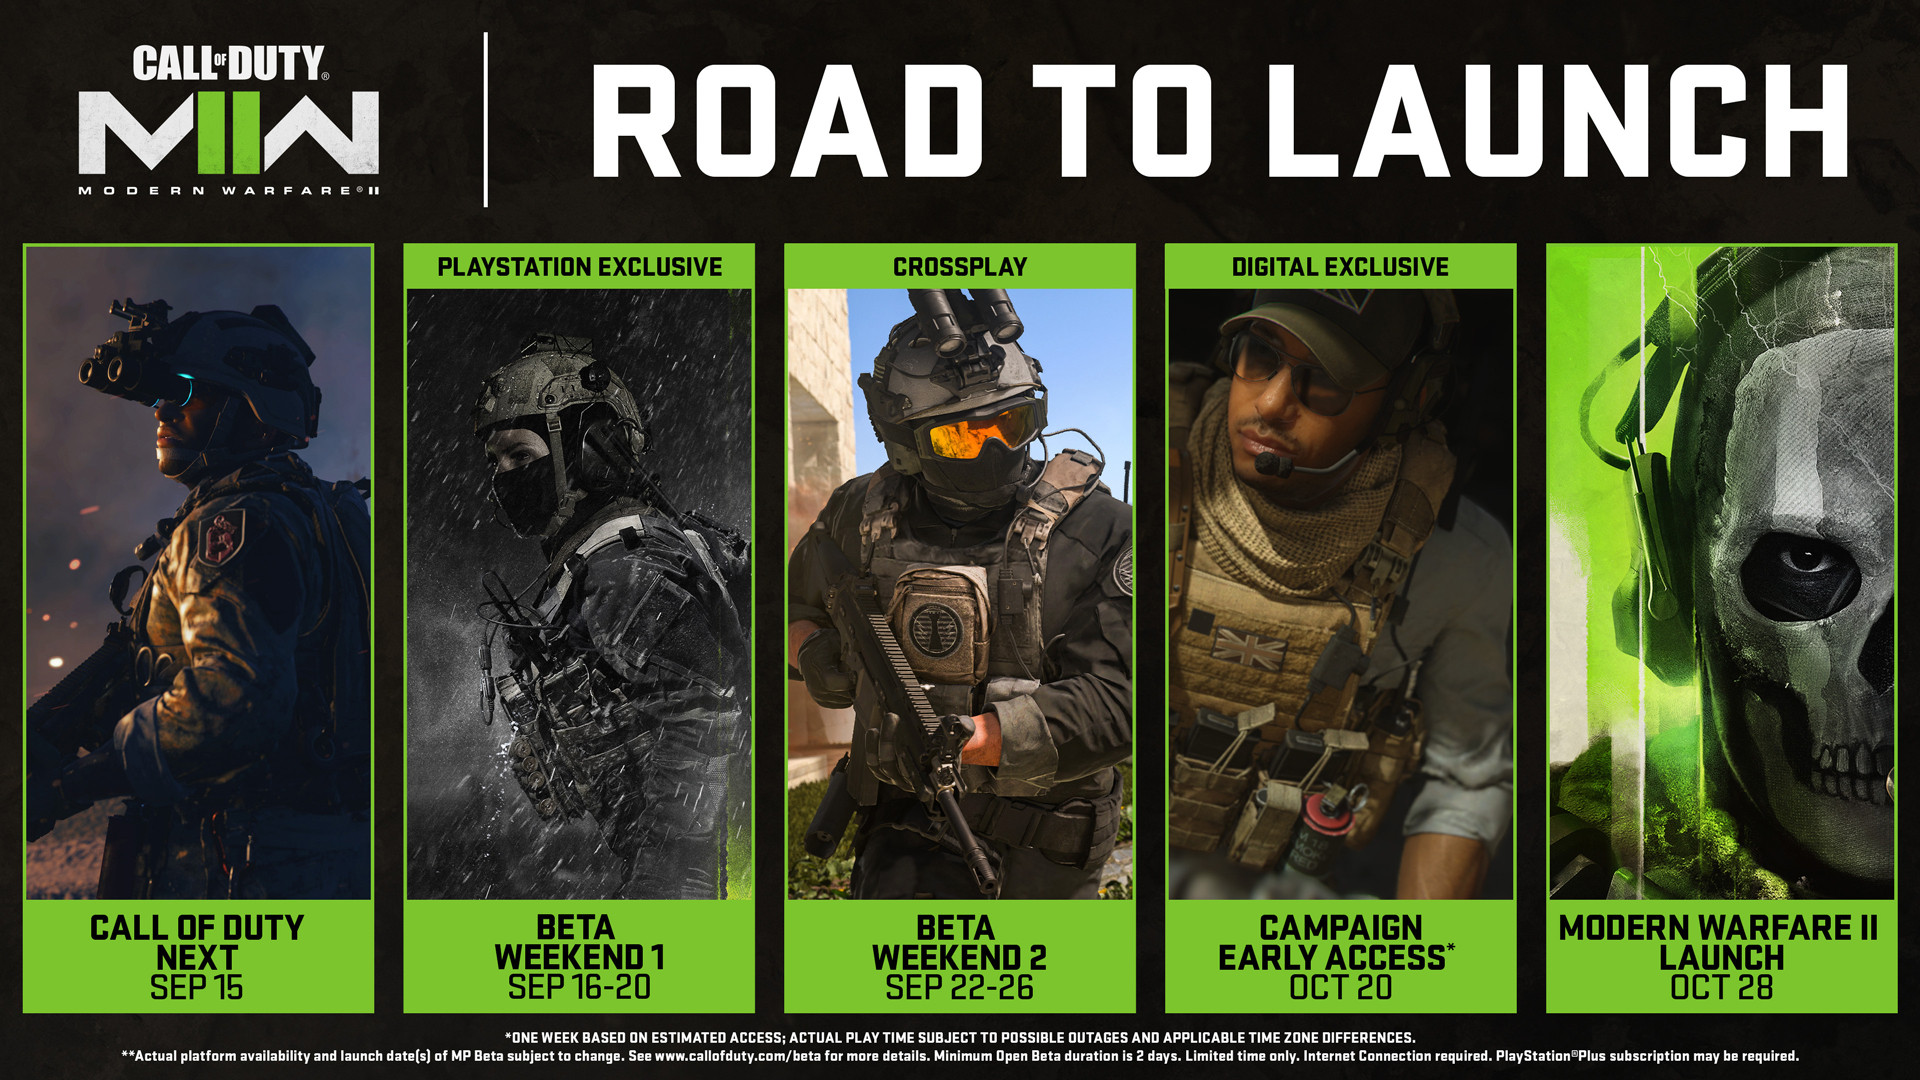 По предзаказу в кампанию Call of Duty: Modern Warfare II можно будет начать играть раньше на неделю: с сайта NEWXBOXONE.RU